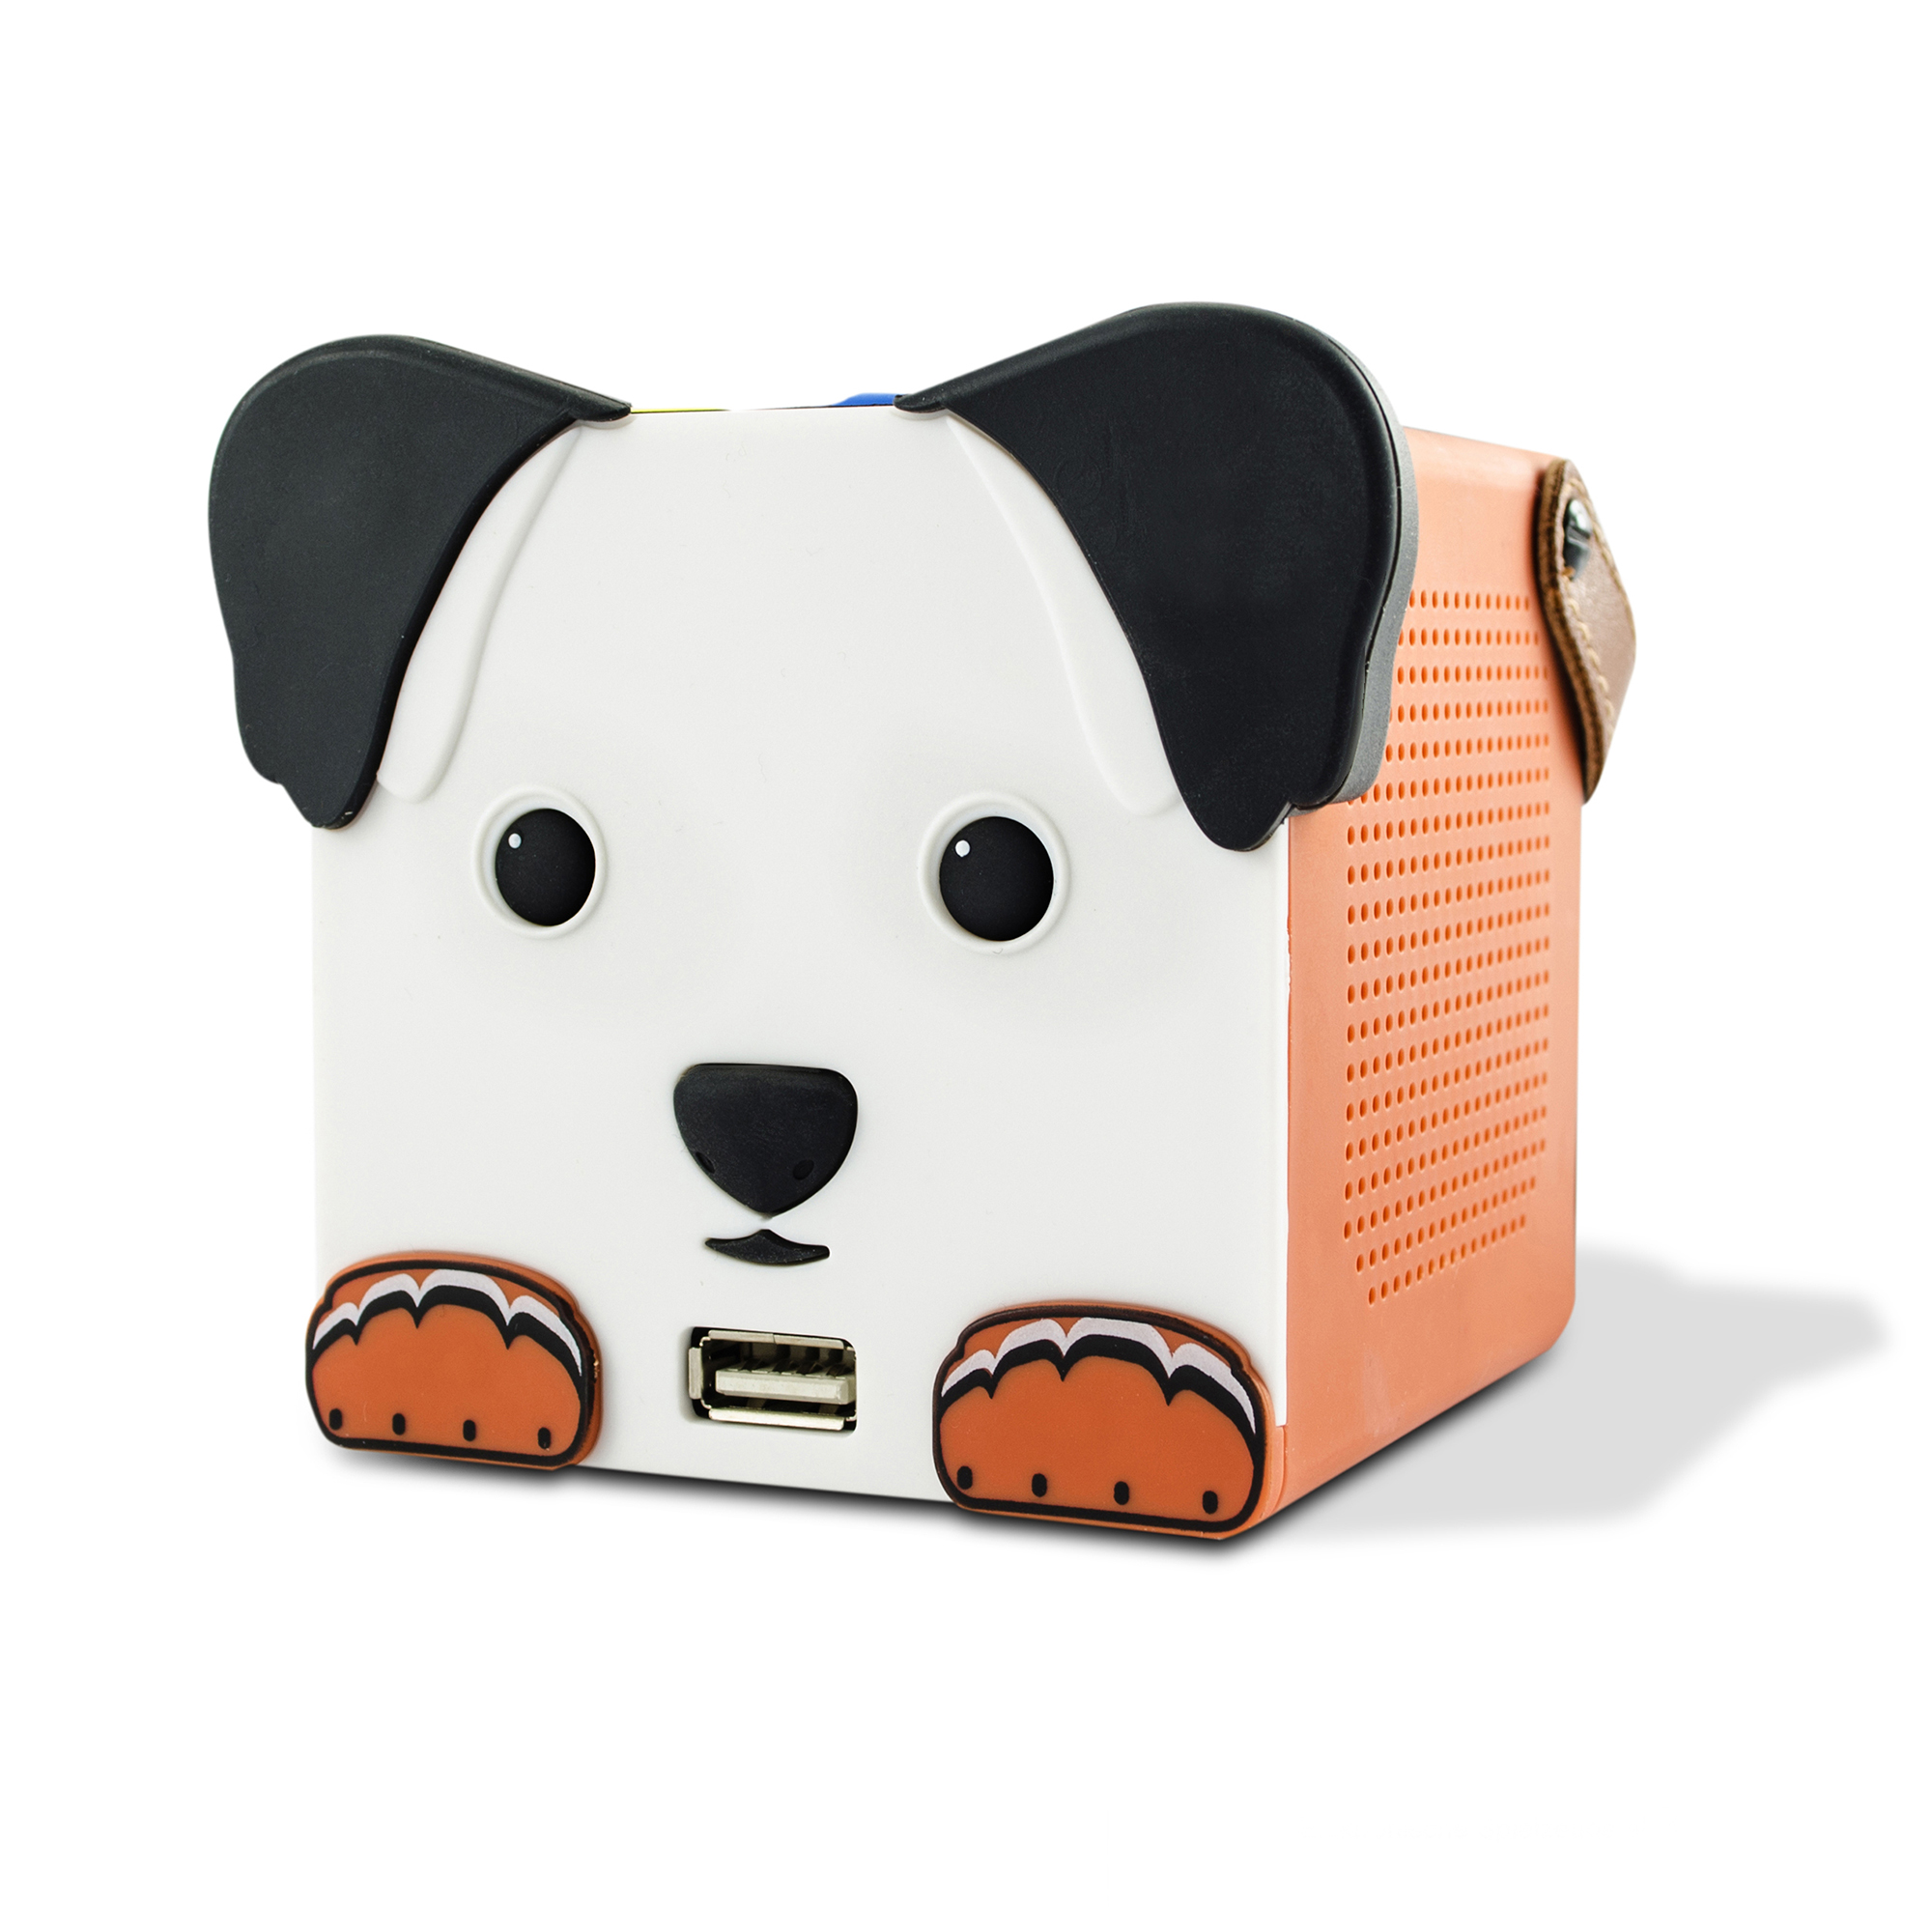 X4-TECH DogBox Bluetooth Lautsprecher, Musikwiedergabe SD-Karte, USB Stick, spielerisch bedienen, Kinder-Player